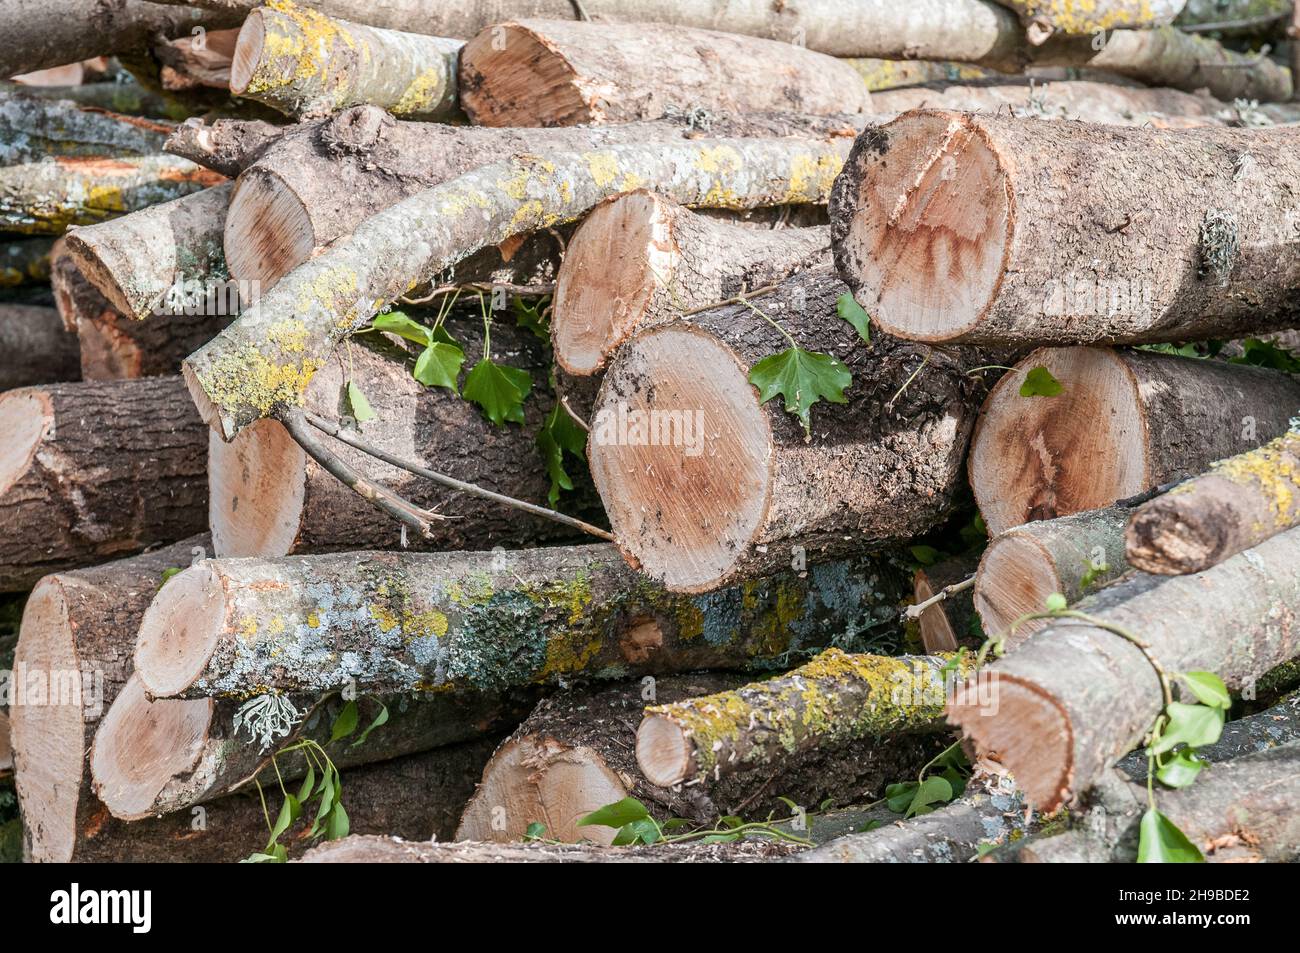 Leña apilada, troncos apilados, en el bosque esperando transporte, el Macizo de Guilleries, Cataluña, España Foto de stock